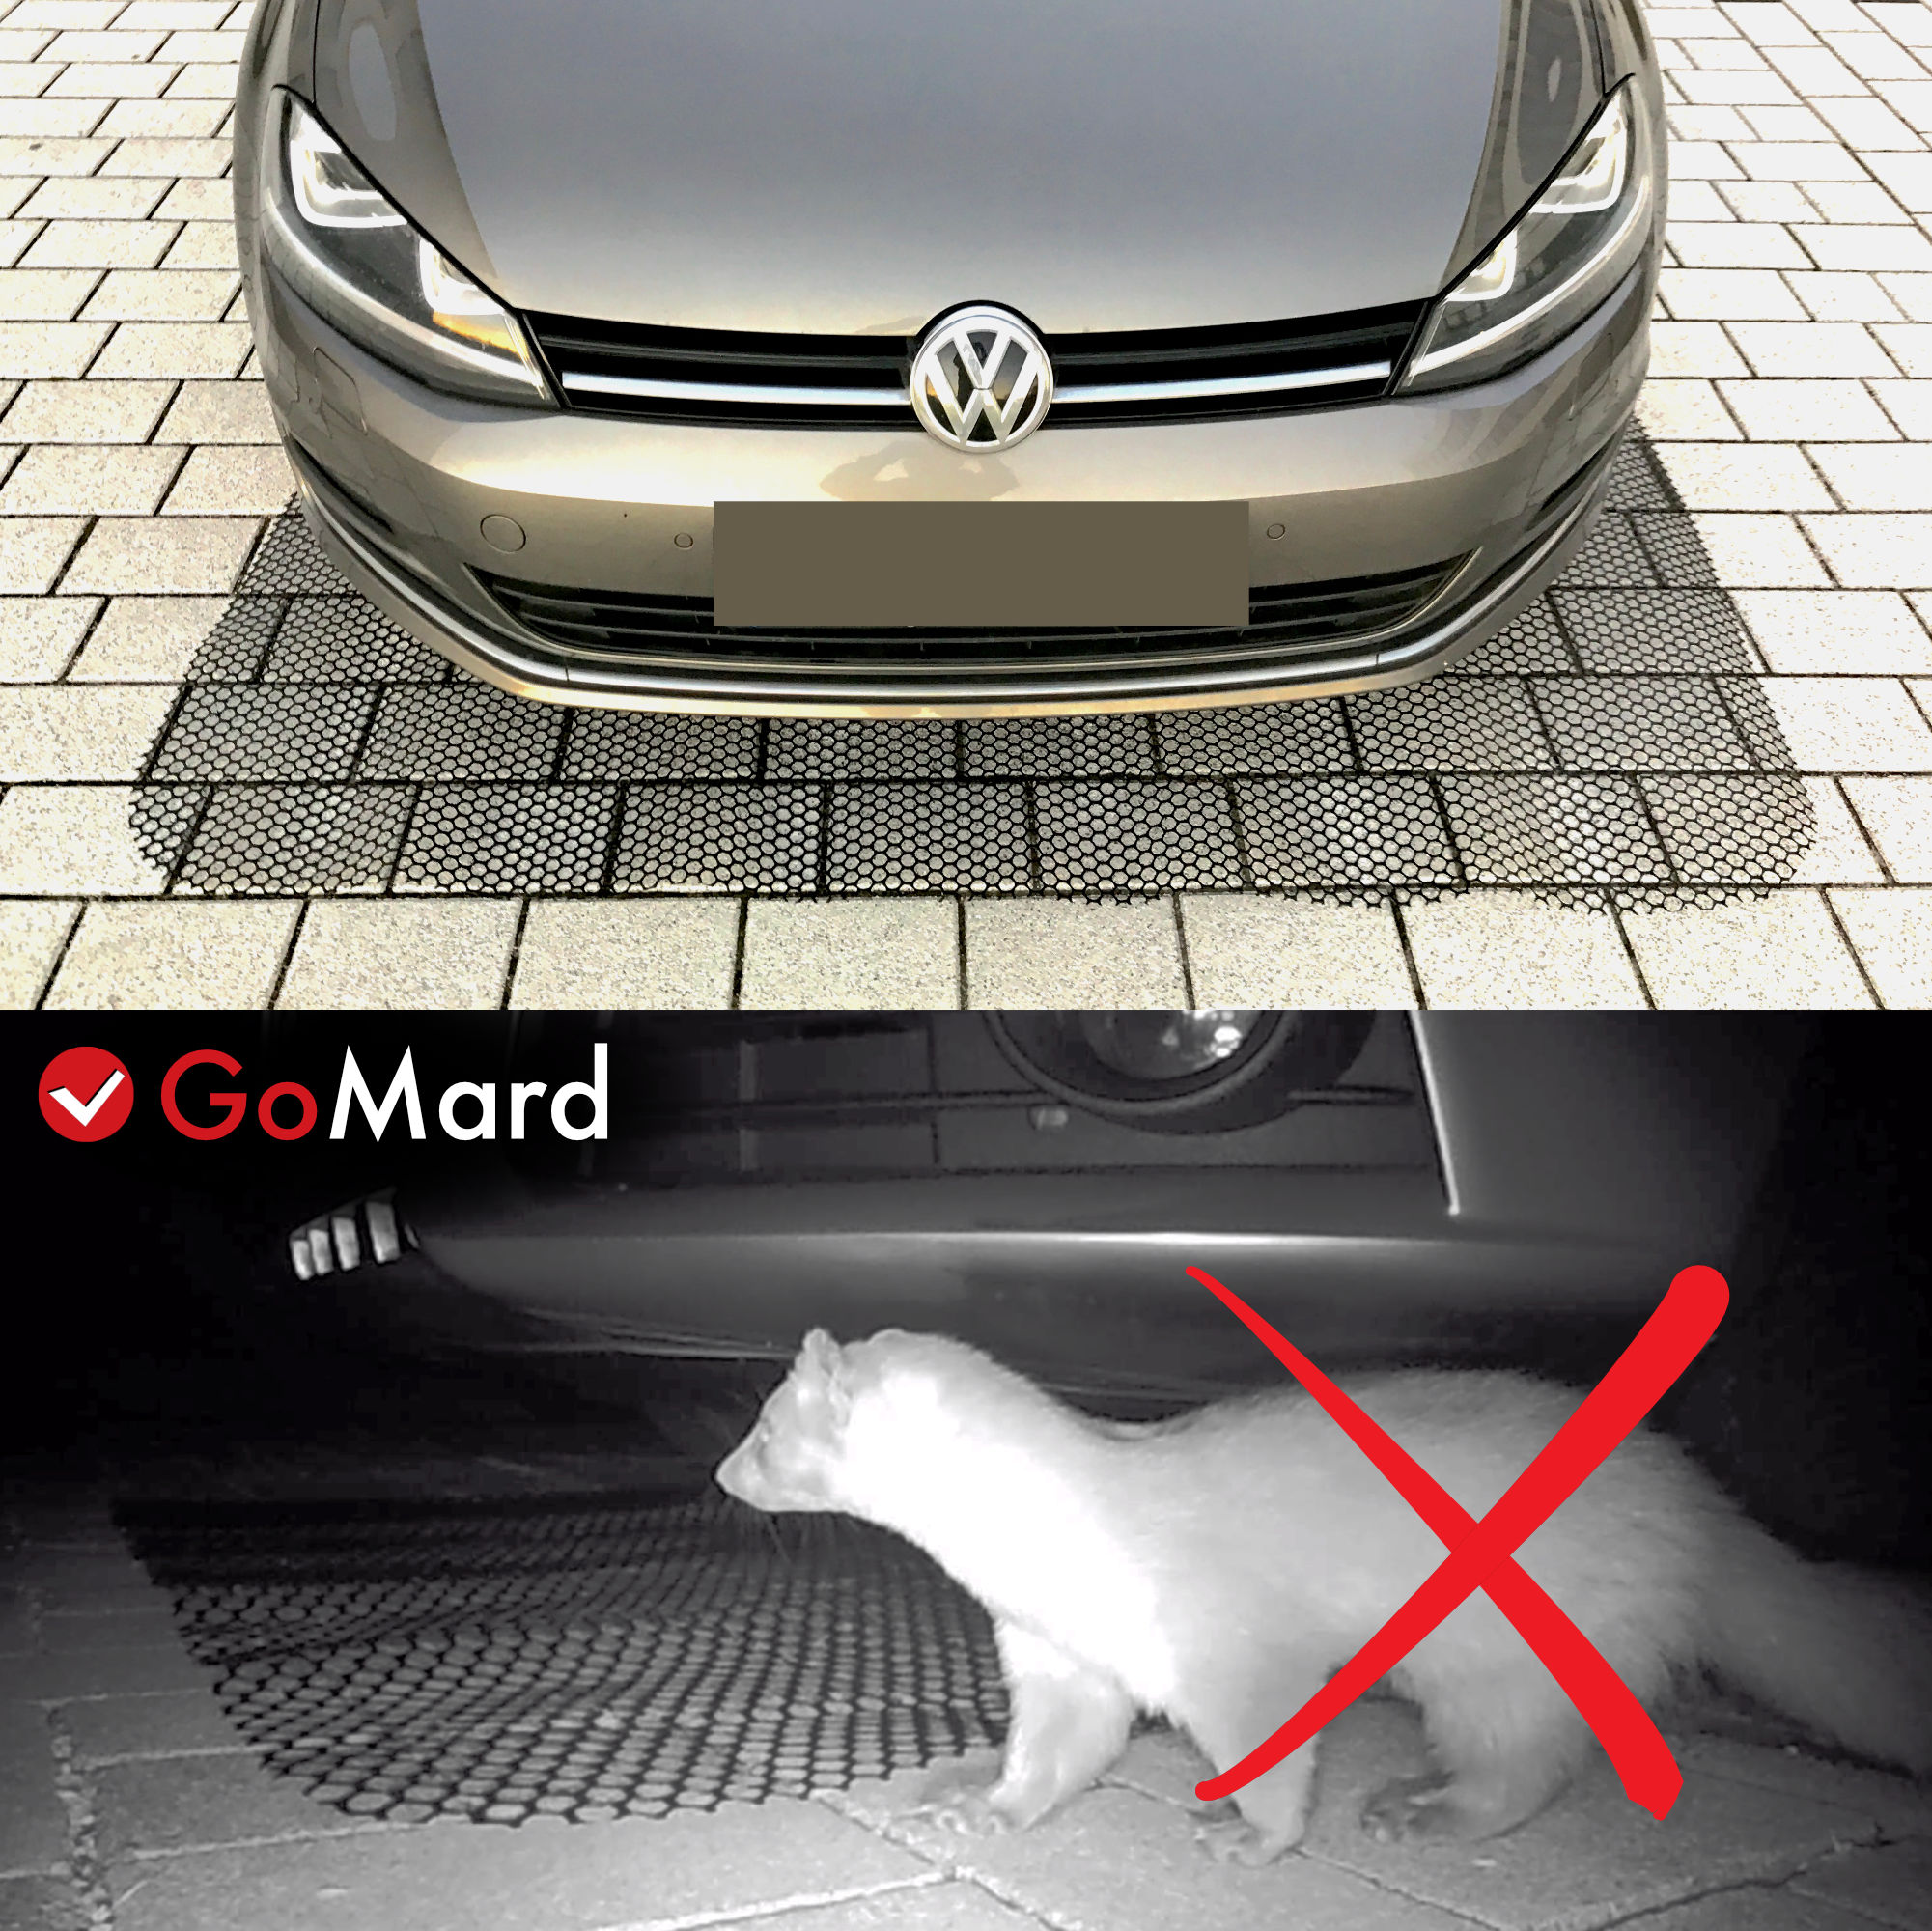 GOMAGO Marderschutz für Ihr Auto, Vertreibt den Marder zuverlässig und  einfach aus dem Motorraum